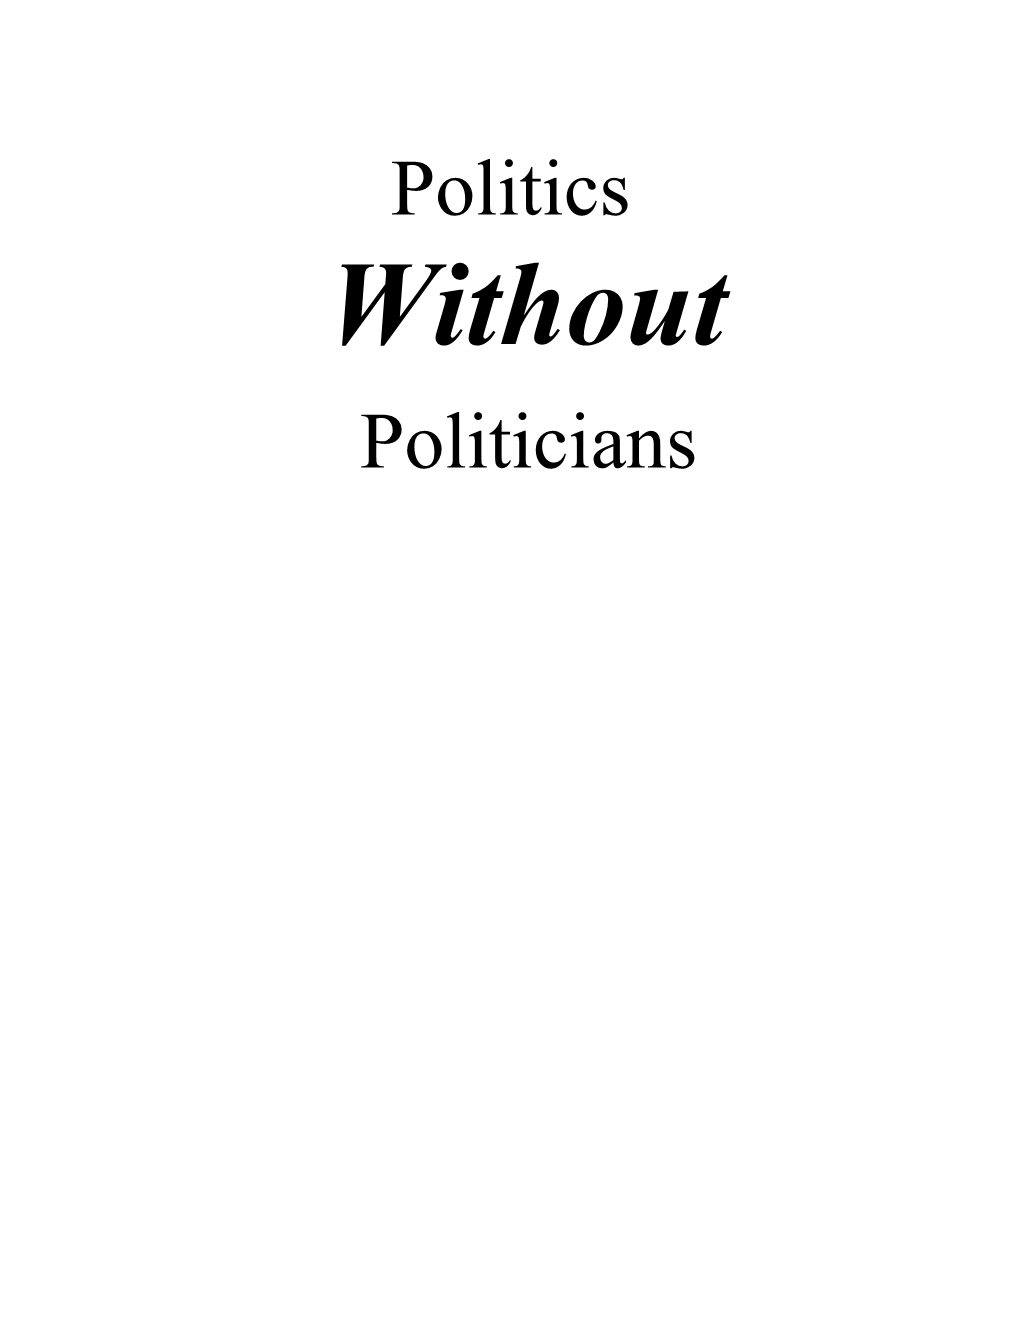 Politics Without Politicians